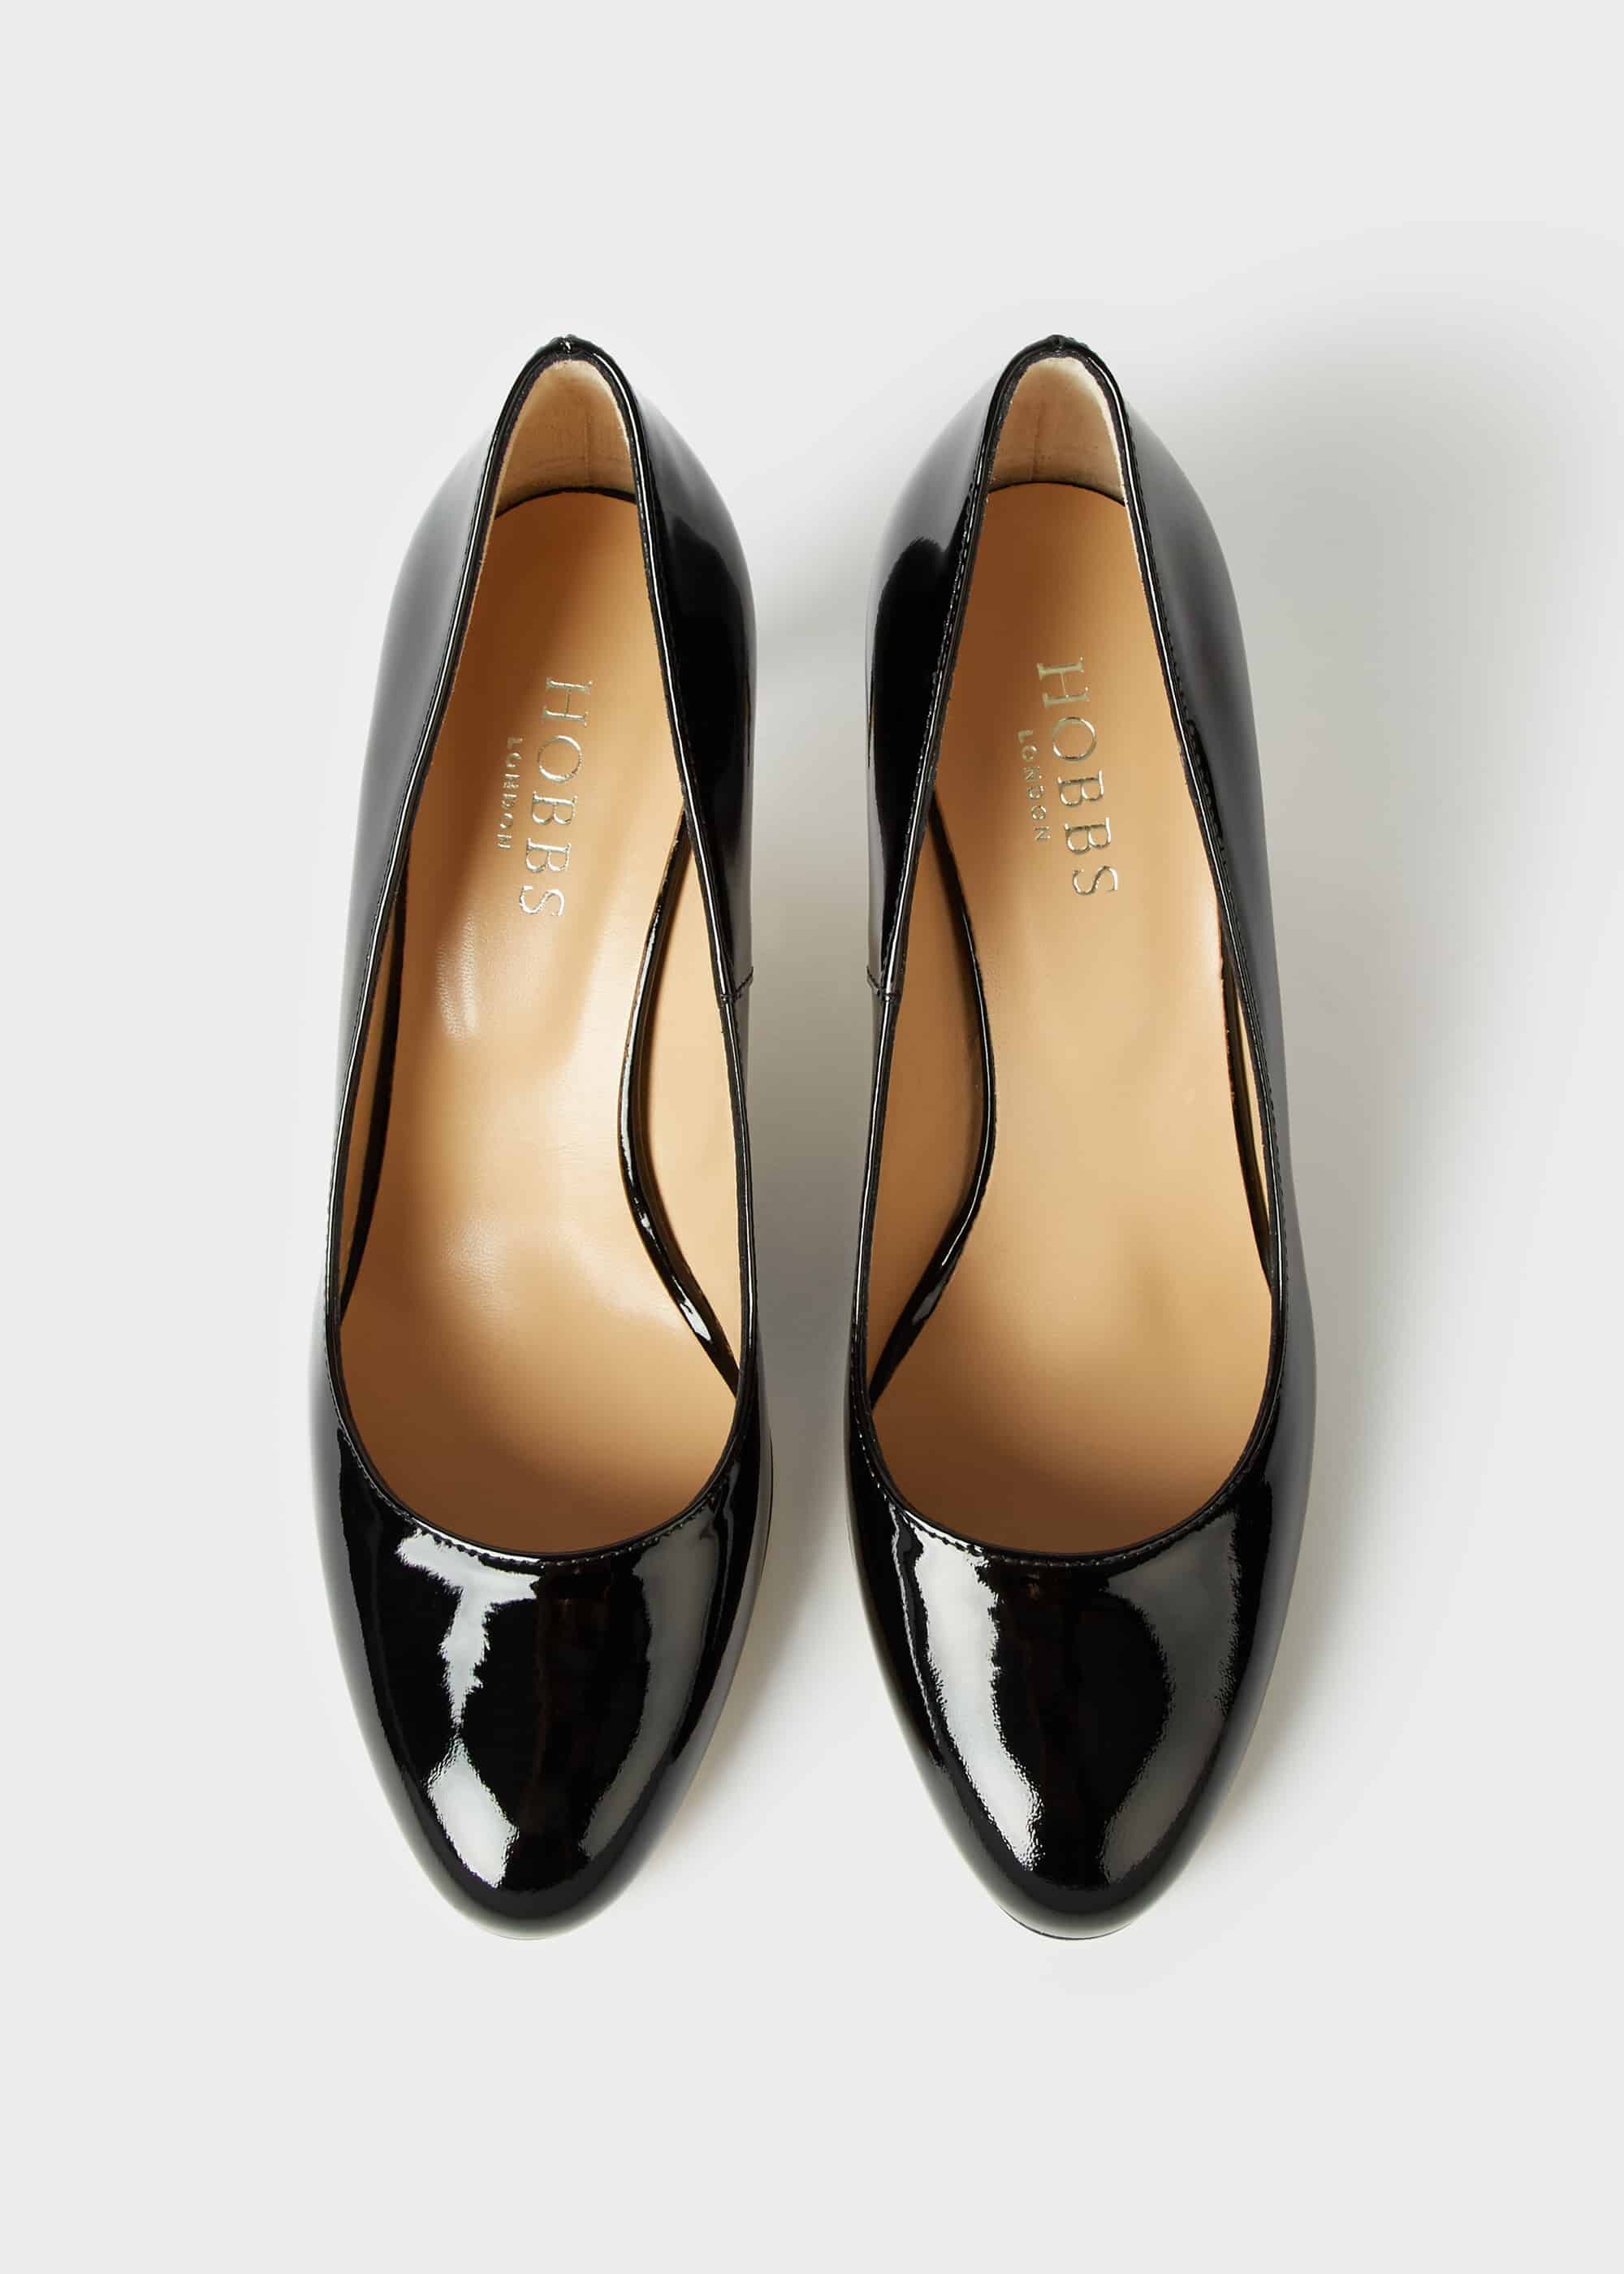 black patent stiletto court shoes